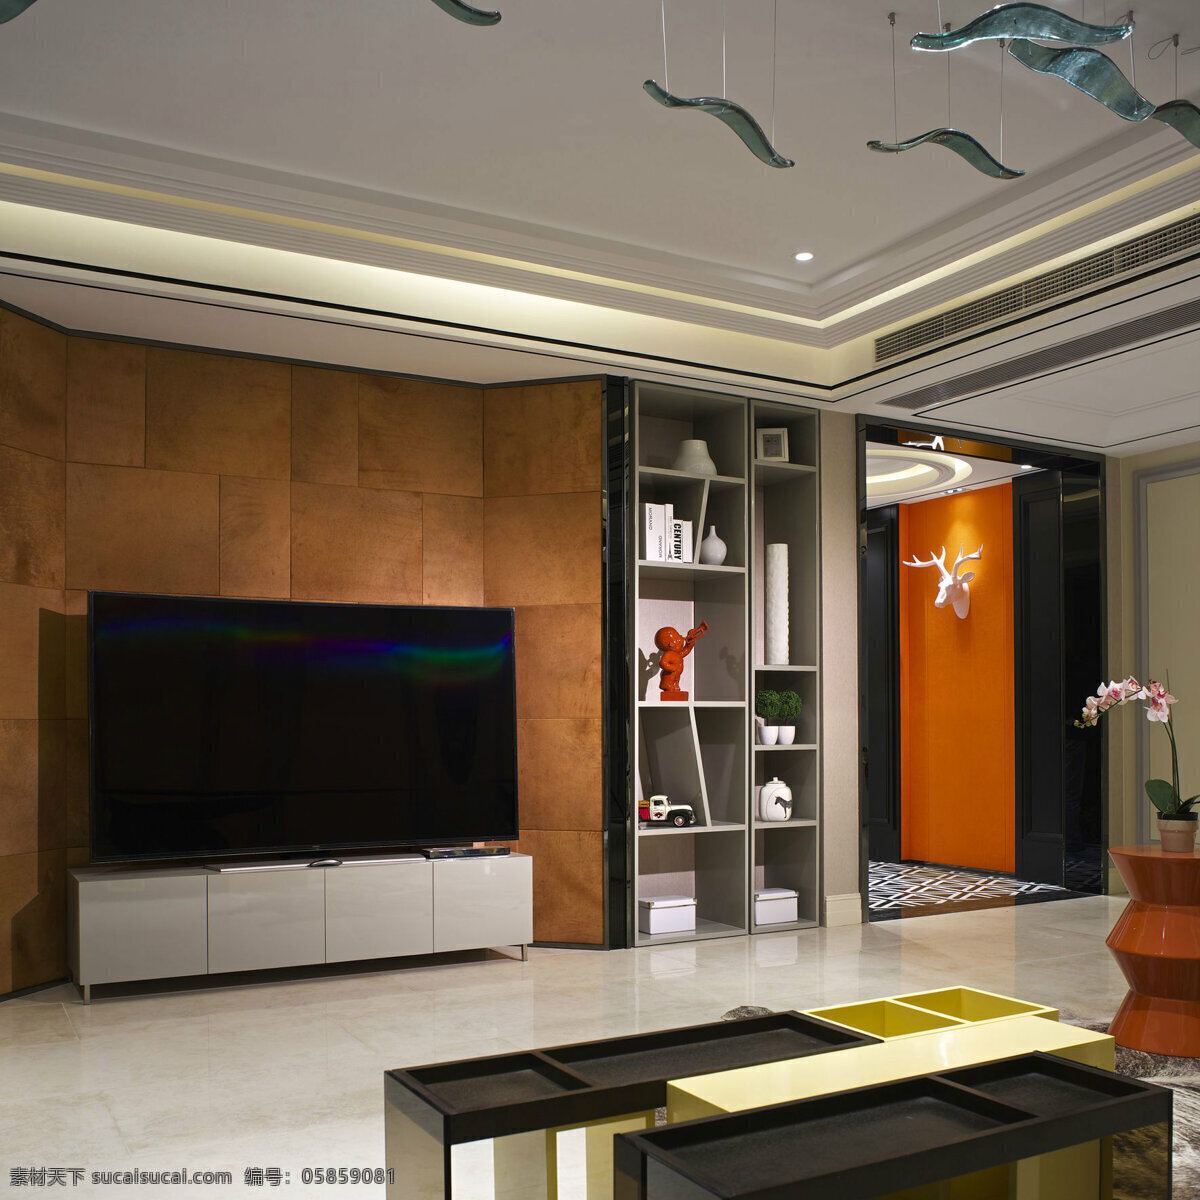 现代 时尚 客厅 褐色 背景 墙 室内装修 效果图 白色地板 客厅装修 黑色茶几 浅色衣柜